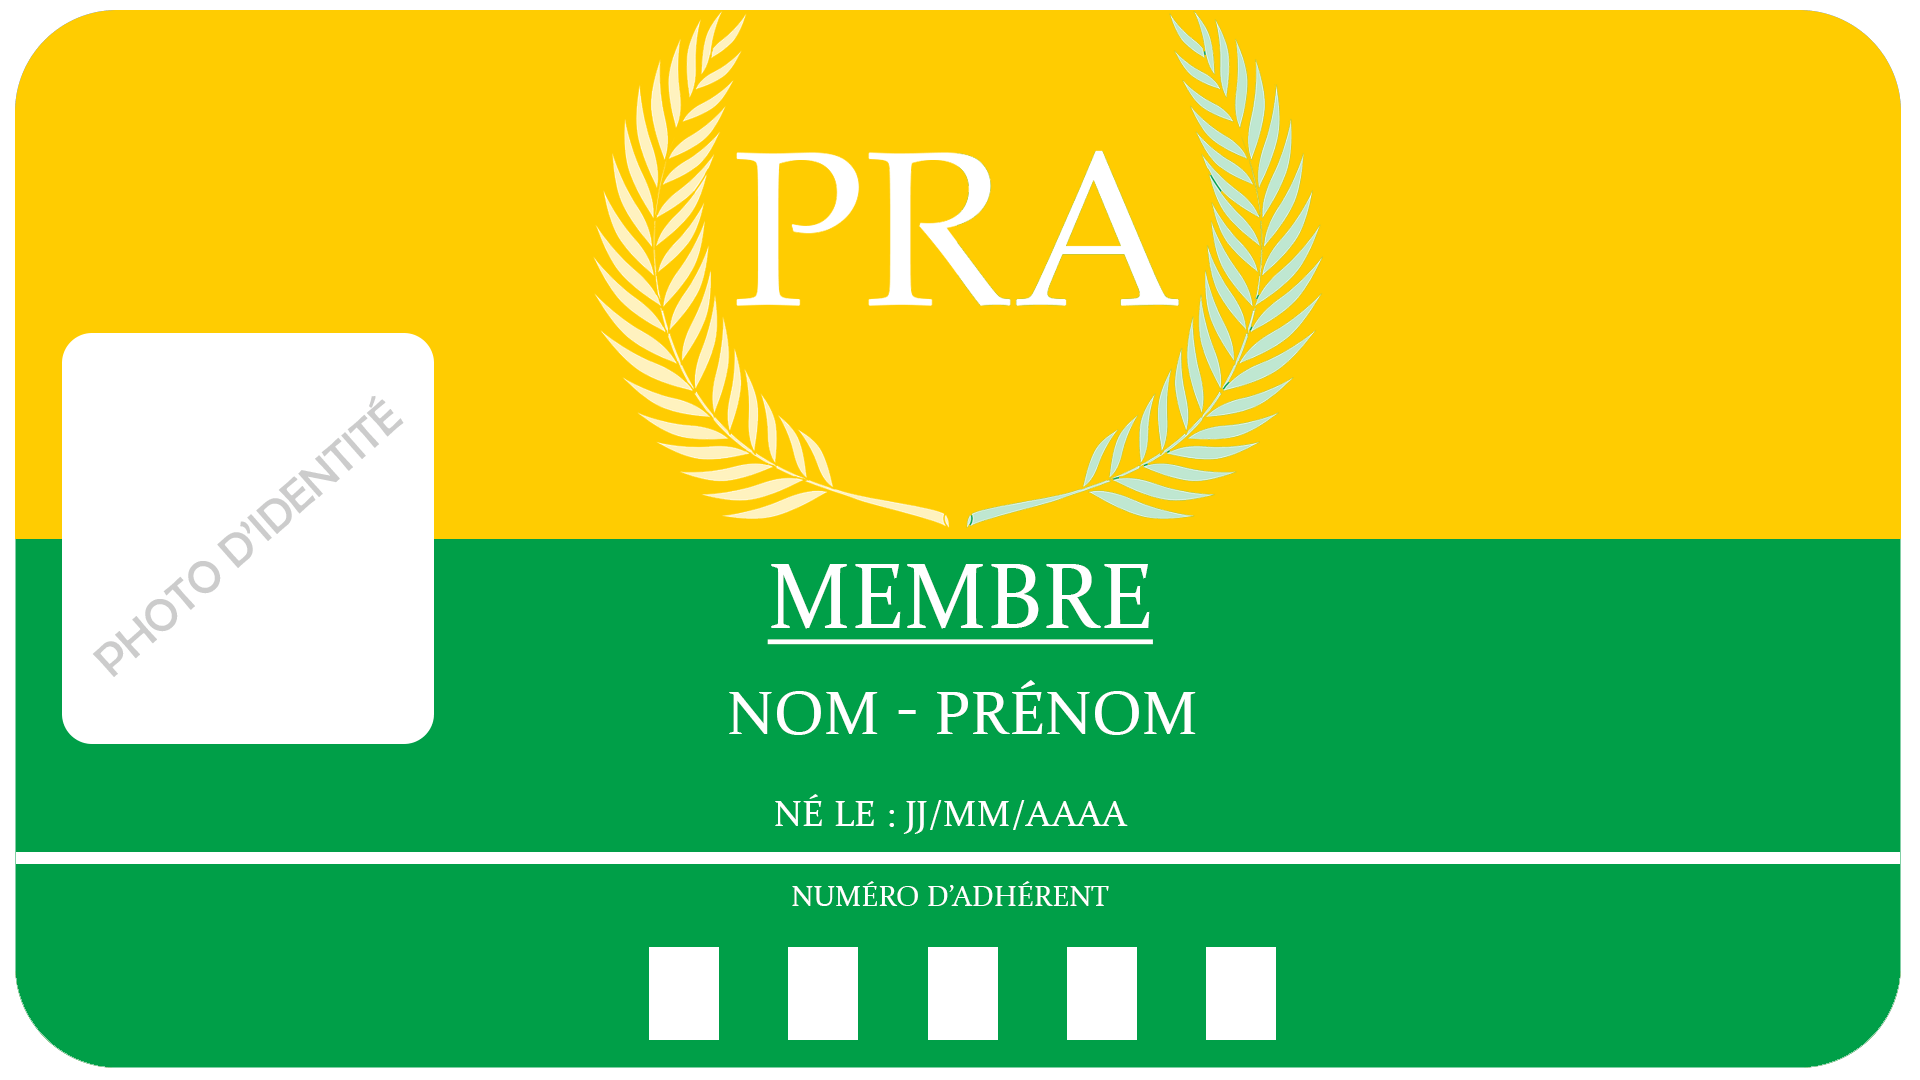 Carta PRA.png